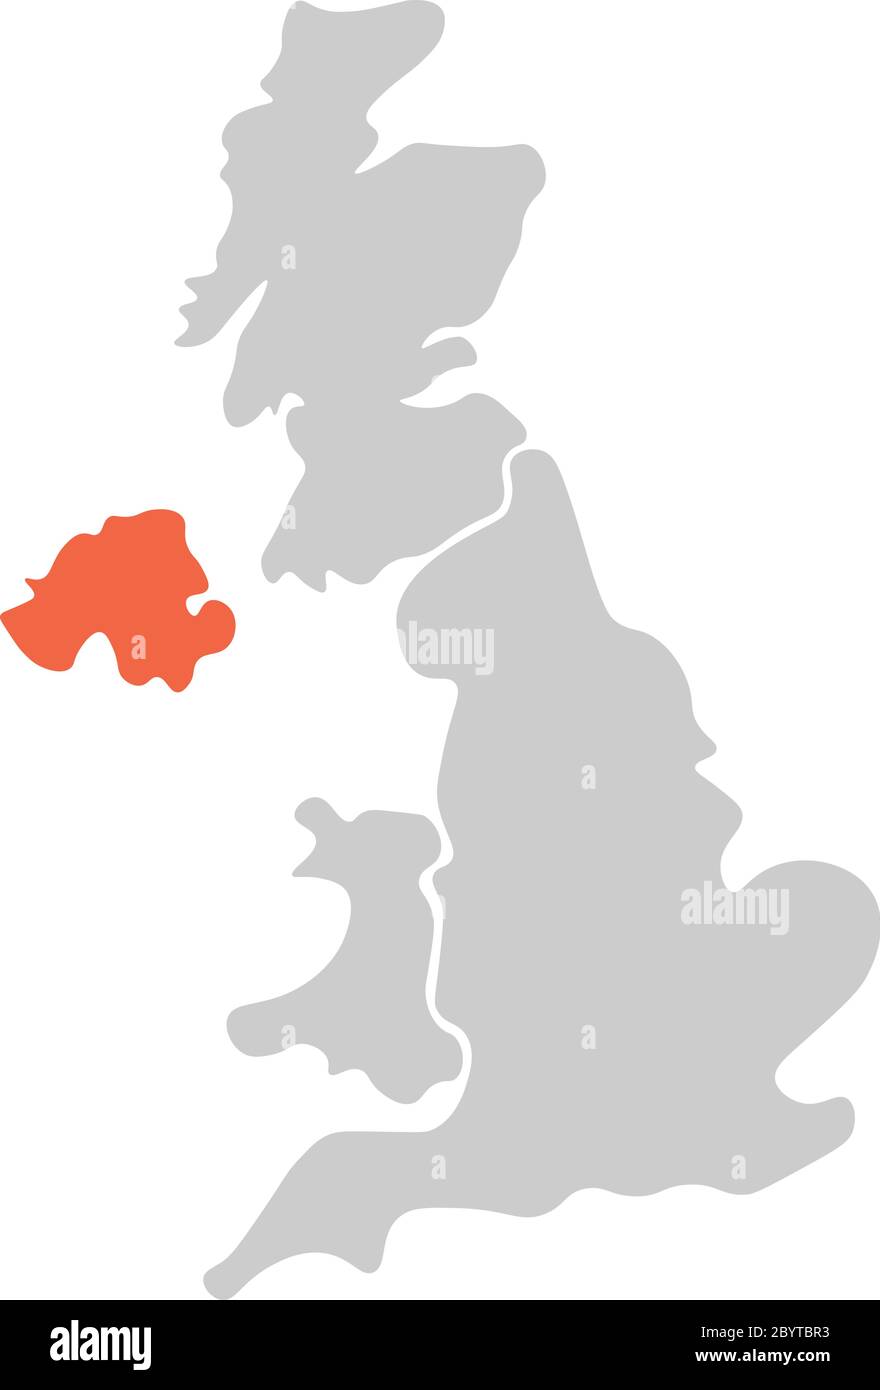 Vereinfachte, handgezeichnete, leere Karte des Vereinigten Königreichs von Großbritannien und Nordirland, Großbritannien. Aufgeteilt in vier Länder, wobei Nordirland rot hervorgehoben ist. Einfache flache Vektorgrafik. Stock Vektor